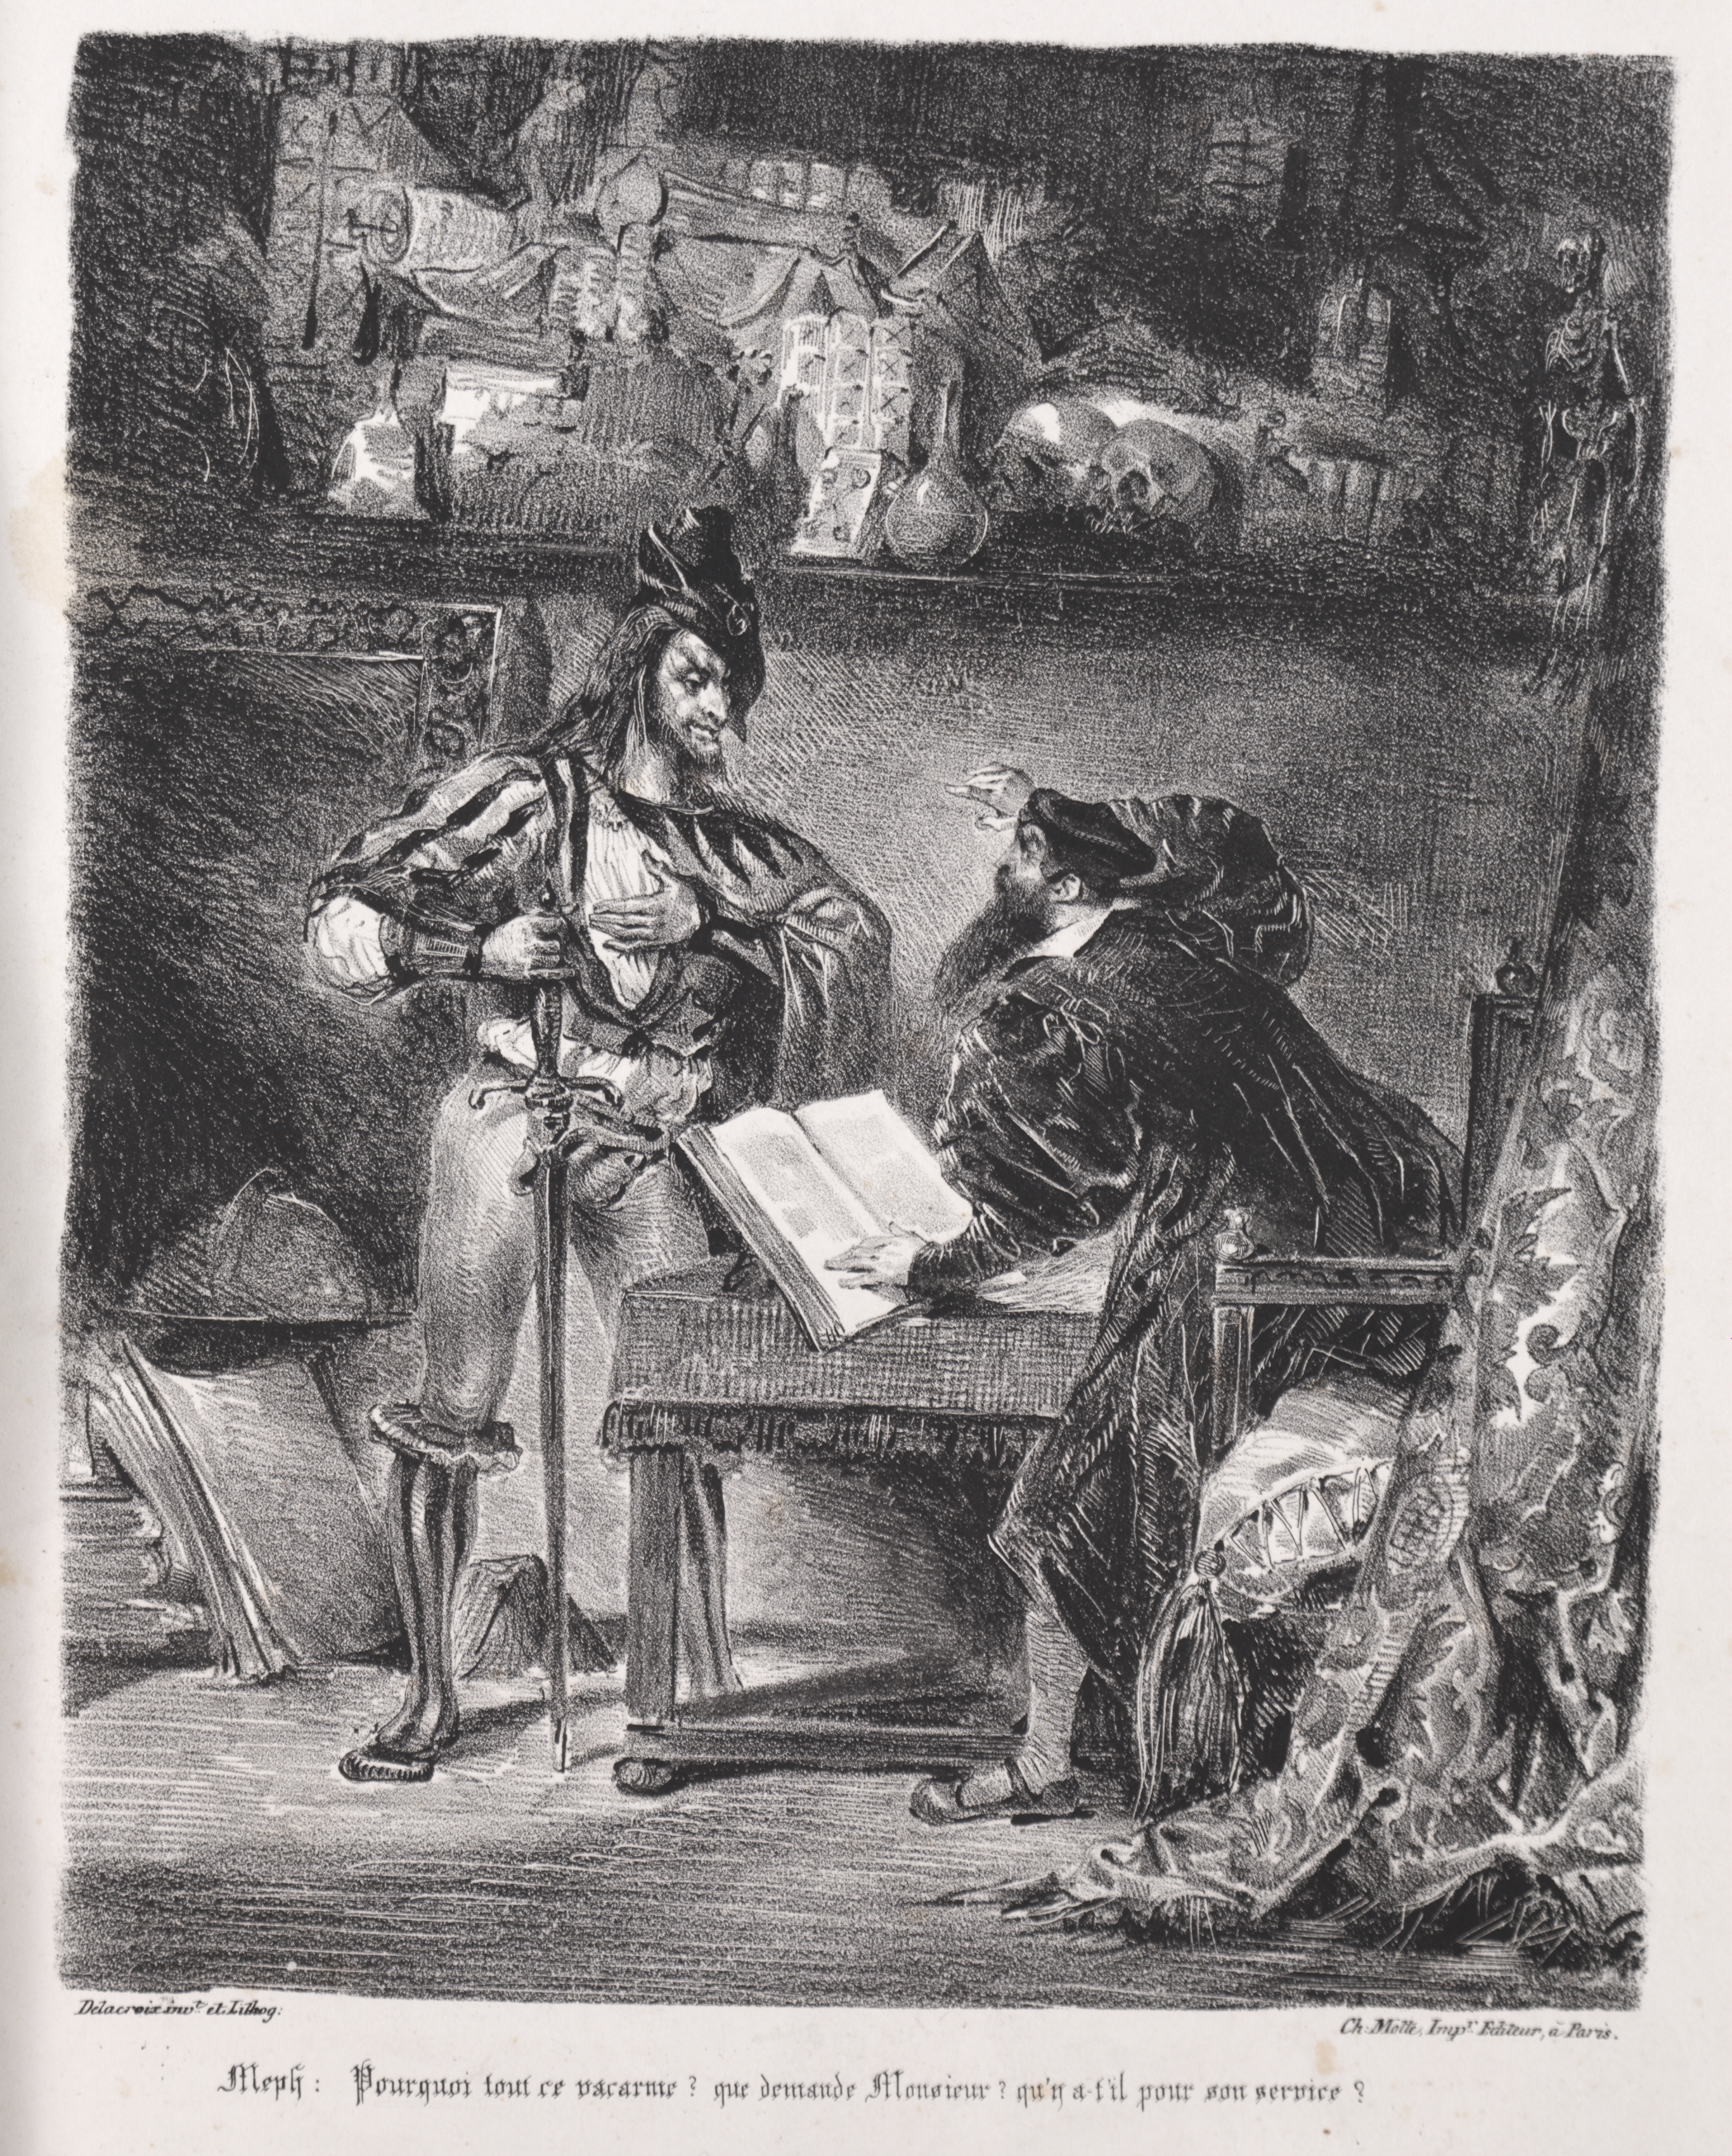 Illustrations for Faust:  Méphistophélés visits Faust